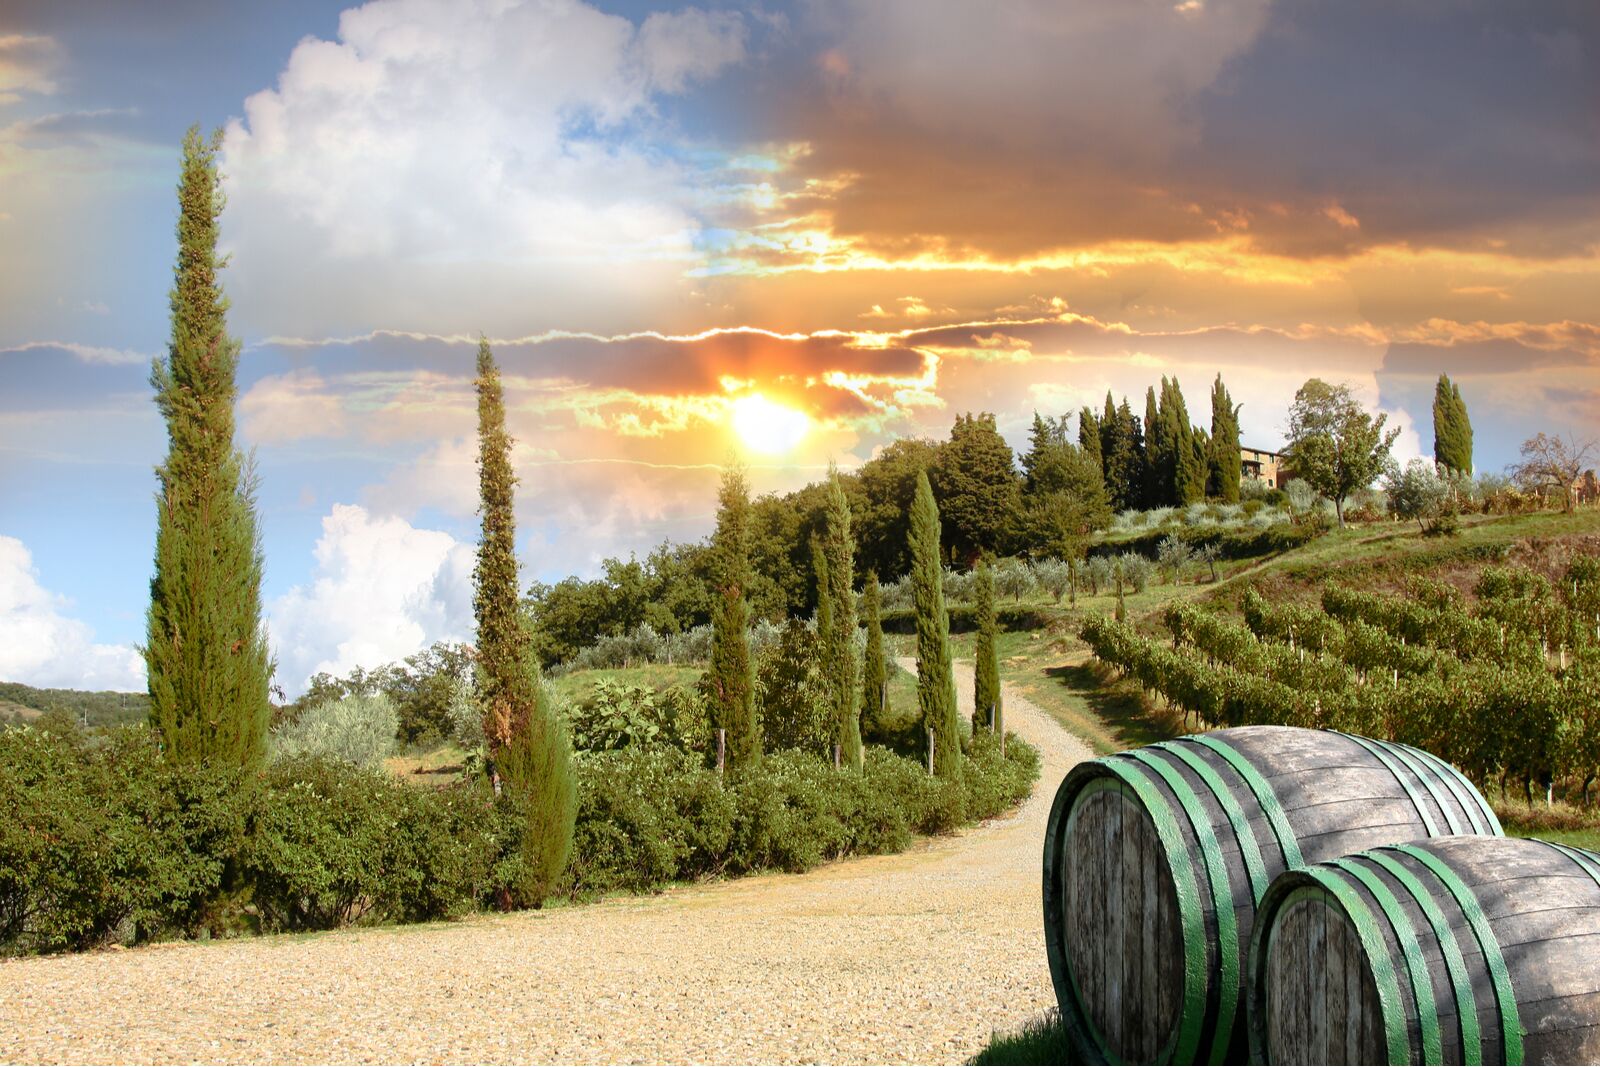 Italy wine tour - one day through chianti region